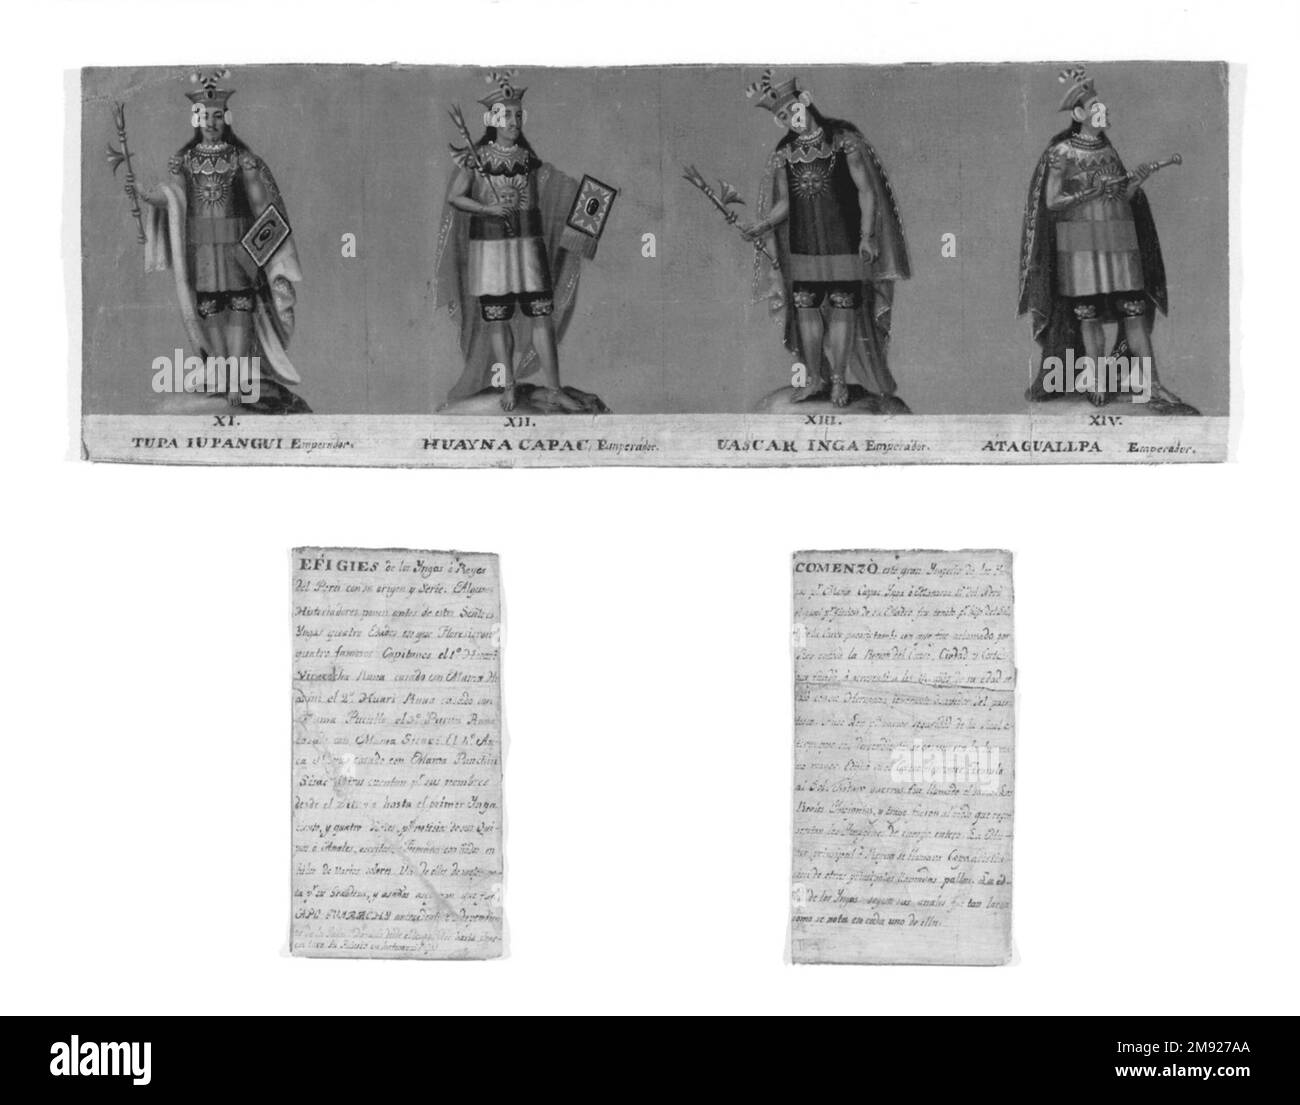 Vier Inka-Könige: Tupac Yupanqui, Huayna Capac, Huascar Inca, Atahuallpa Unbekannt. Vier Inka-Könige: Tupac Yupanqui, Huayna Capac, Huascar Inca, Atahuallpa, Anfang des 19. Jahrhunderts. Öl auf Segeltuch, 7 3/4 x 22 3/4 Zoll (19,7 x 57,8 cm). Dieses Fragment einer Inka-König-Porträtreihe wurde von der Guarachi-Familie in Auftrag gegeben, einer der bekanntesten indigenen Familien von Vikeregal Peru. Die Ausstellung von Gemälden der Inka-Herrscher im Inka wurde in der Vizekönigschaft zwischen 1781 und 1821 verboten, nach einer Reihe einheimischer Revolten. Nach 1824 erlangten die Porträts eine neue Bedeutung für die Zeit nach der Unabhängigkeit Stockfoto